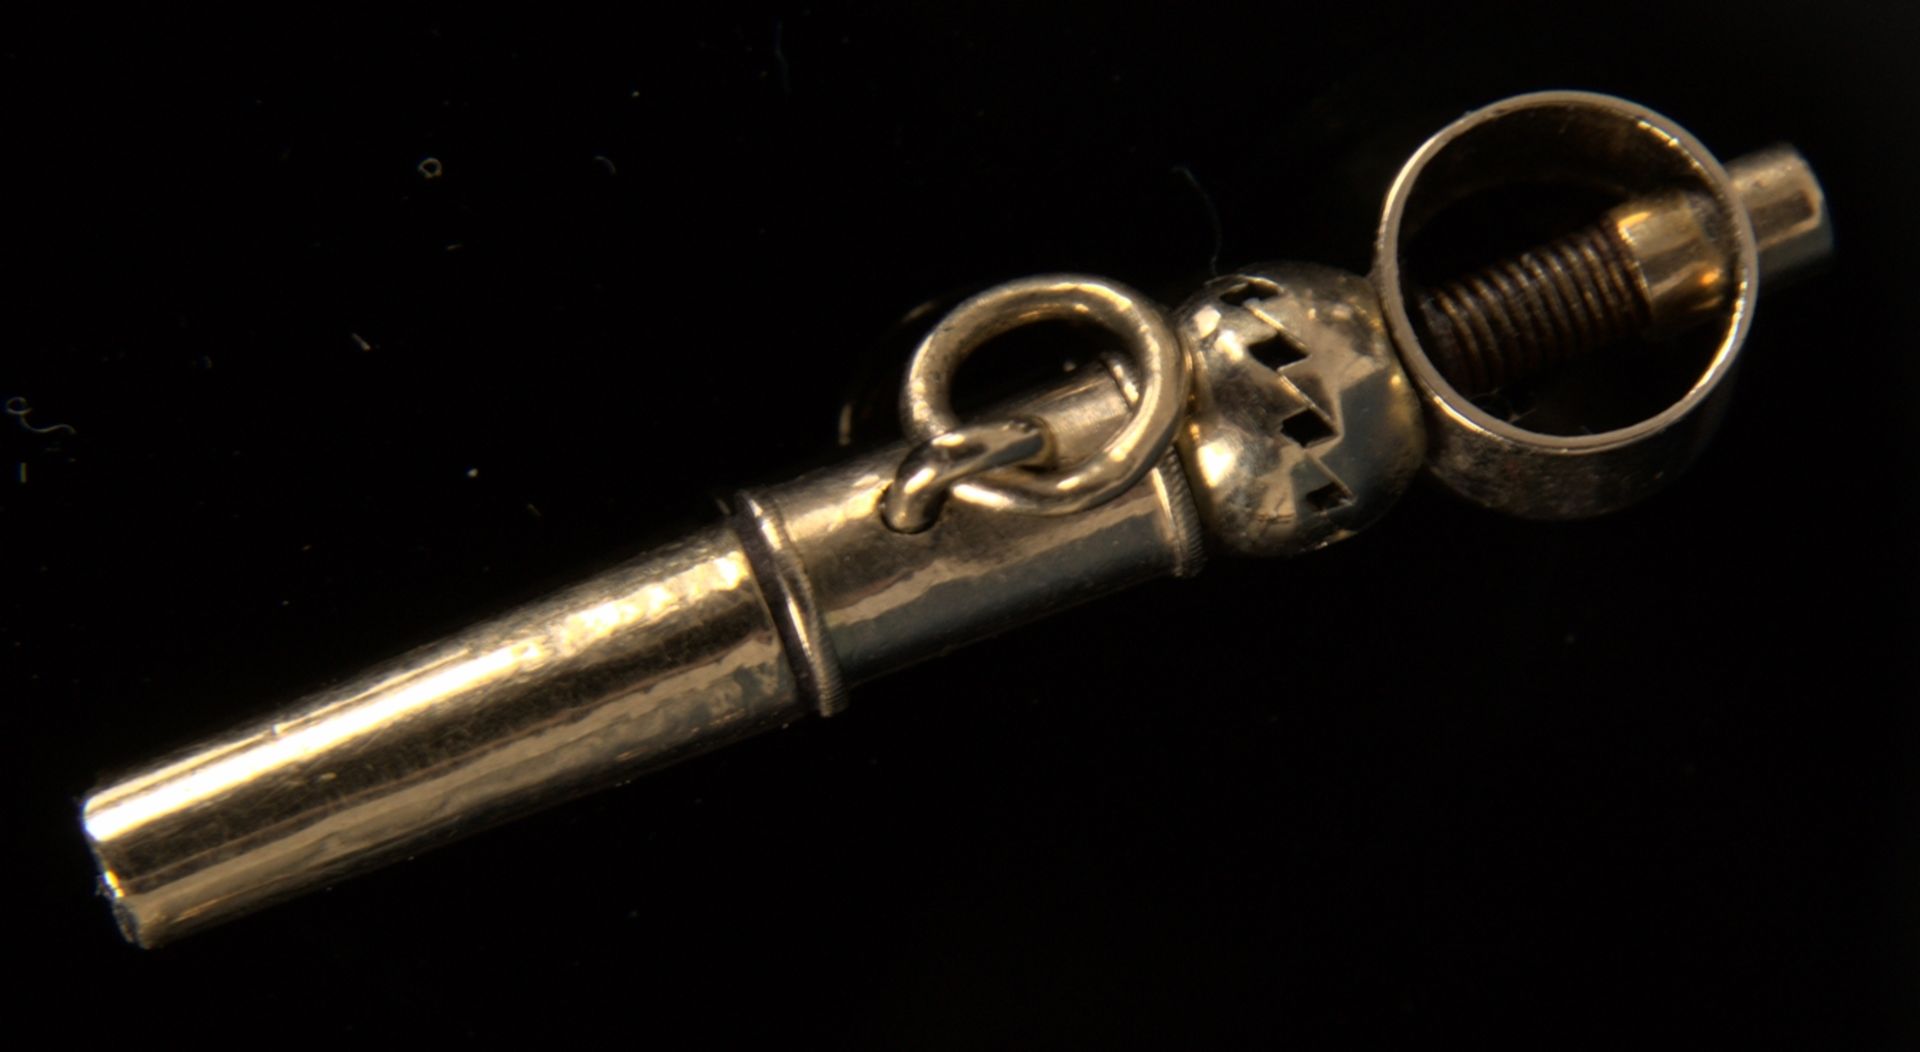 9teilige Sammlung versch. Taschenuhrenschlüssel, überwiegend 19. Jhd. Versch. Alter, Größen, - Image 11 of 18